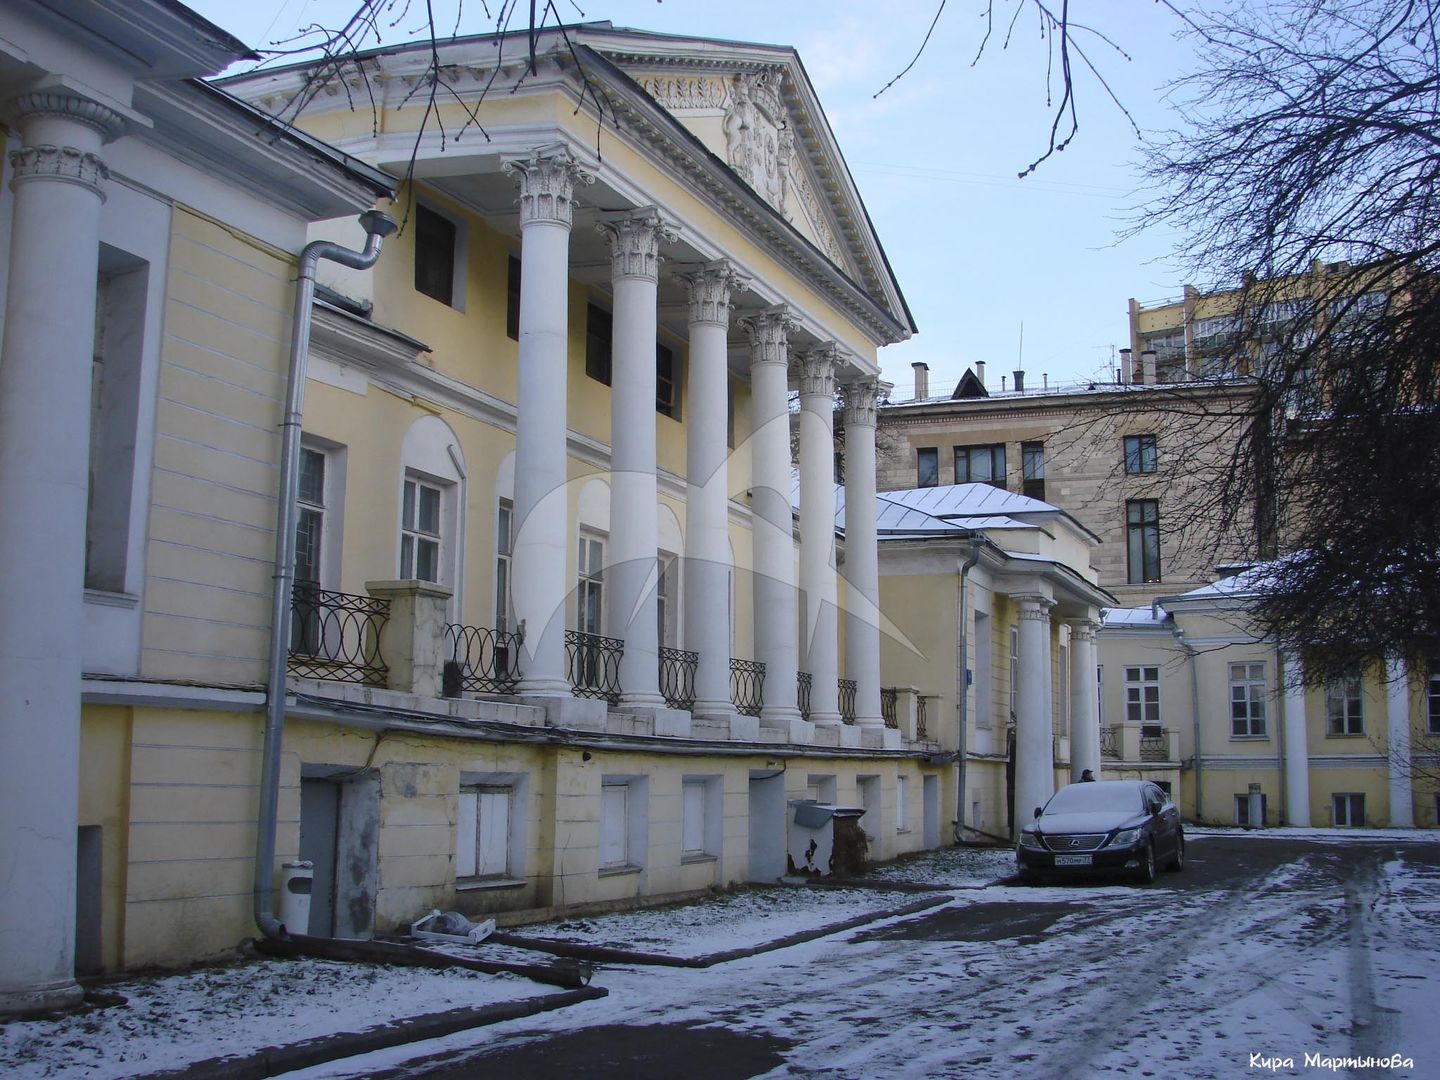 Главный дом с церковью, середина XVIII в. — начало XIX в., городская усадьба Сологуба